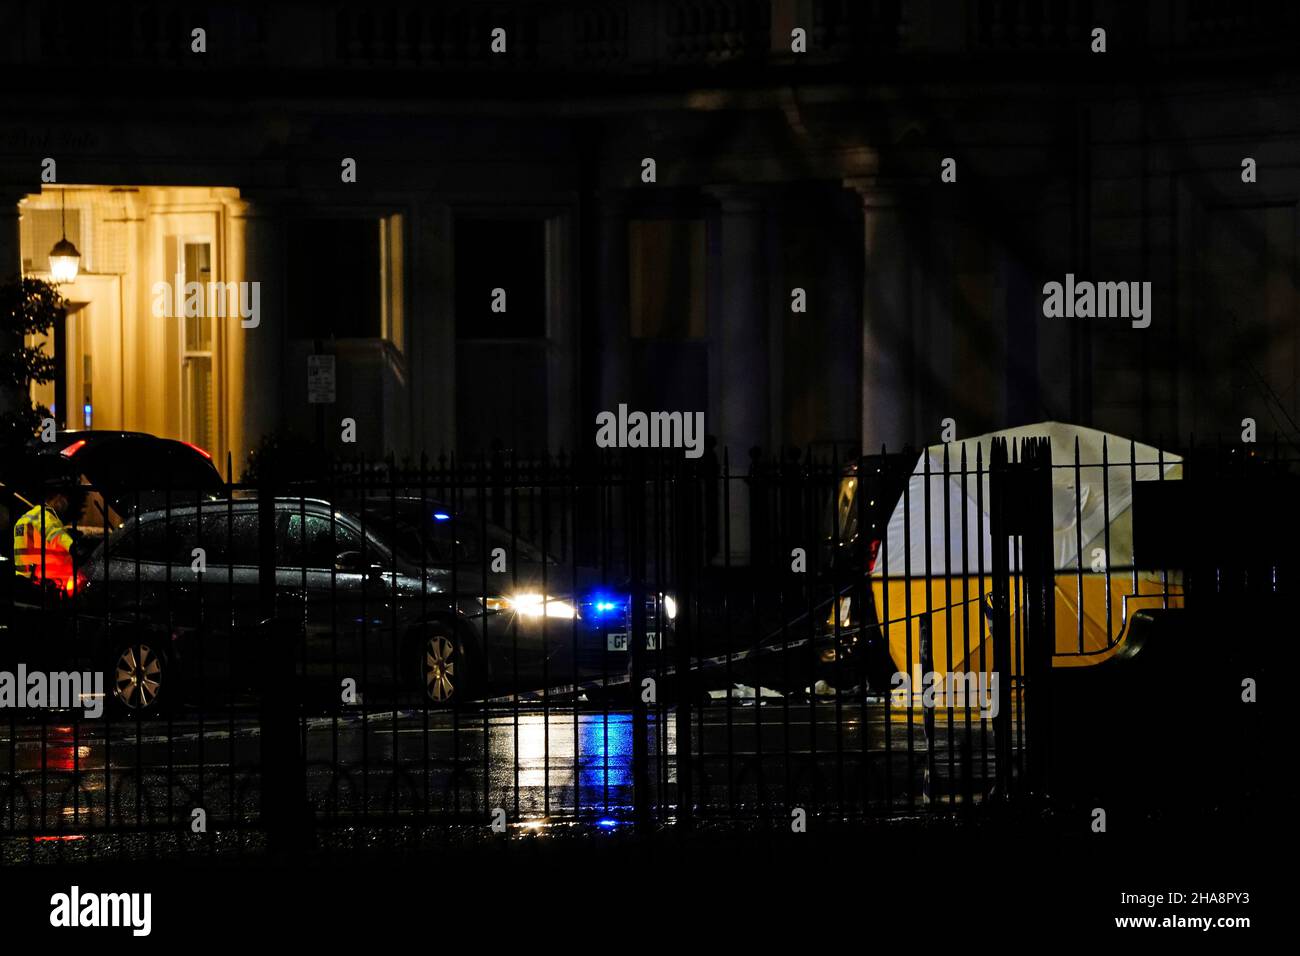 La police sur les lieux de Kensington, à Londres, où un homme est mort après avoir été blessé par balle lors d'un incident impliquant des officiers armés proches du Palais de Kensington.Date de la photo: Samedi 11 décembre 2021. Banque D'Images